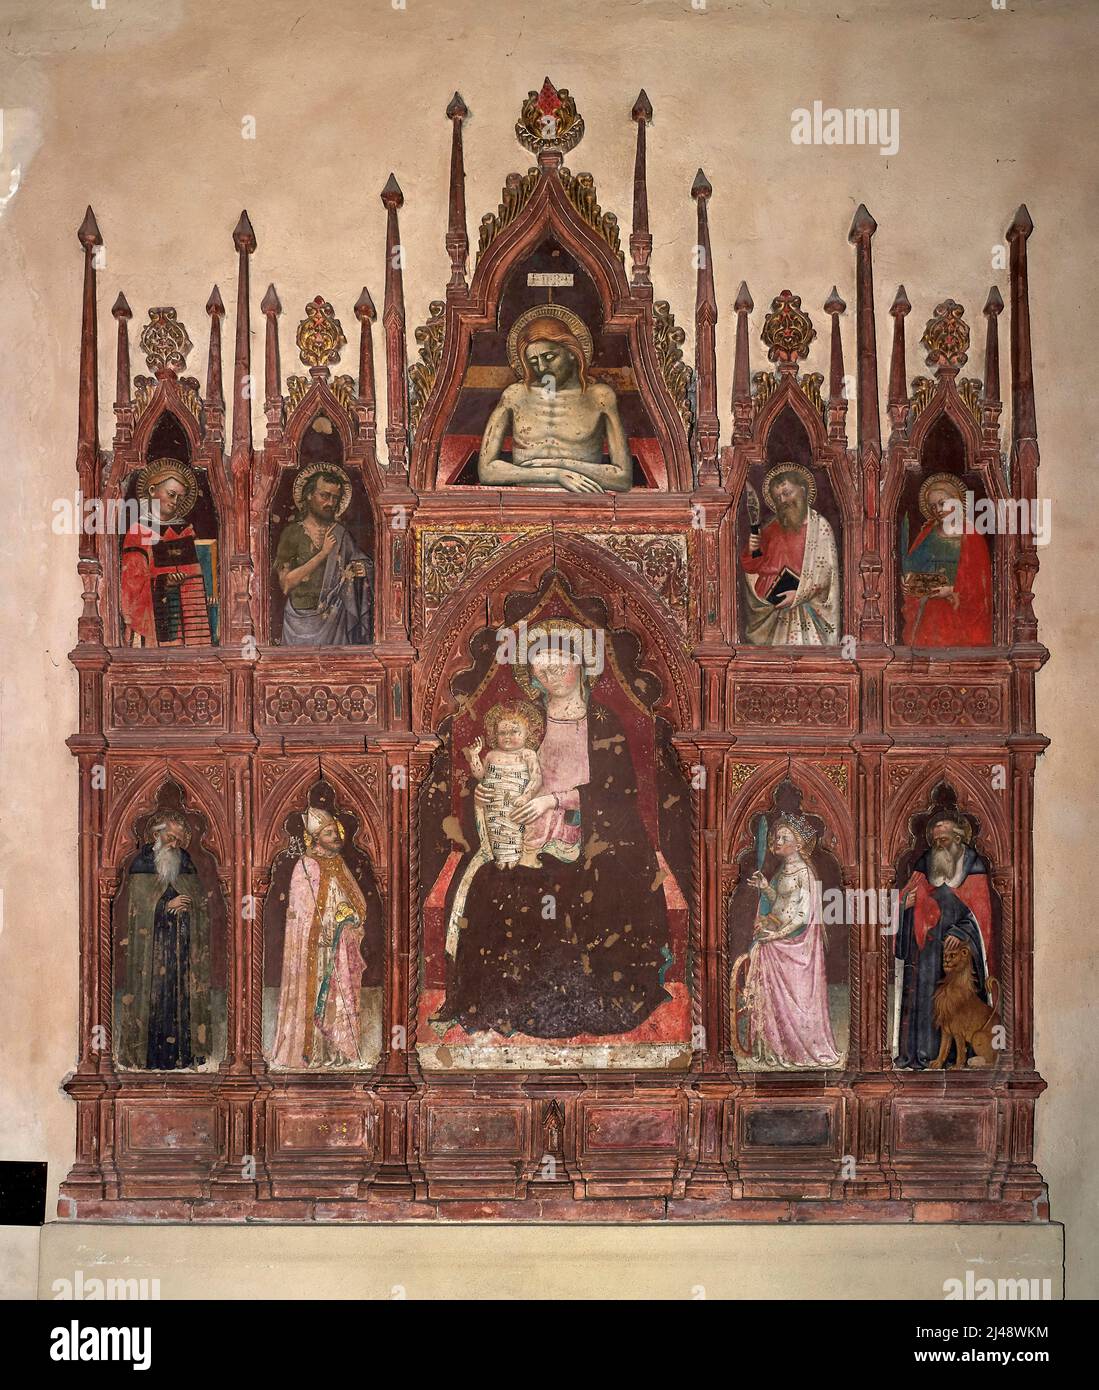 Madonna col Bambino in trono e santi   - Lippo Dalmasio  - XIV secolo  - Bologna, chiesa di S. Maria dei Servi Stock Photo